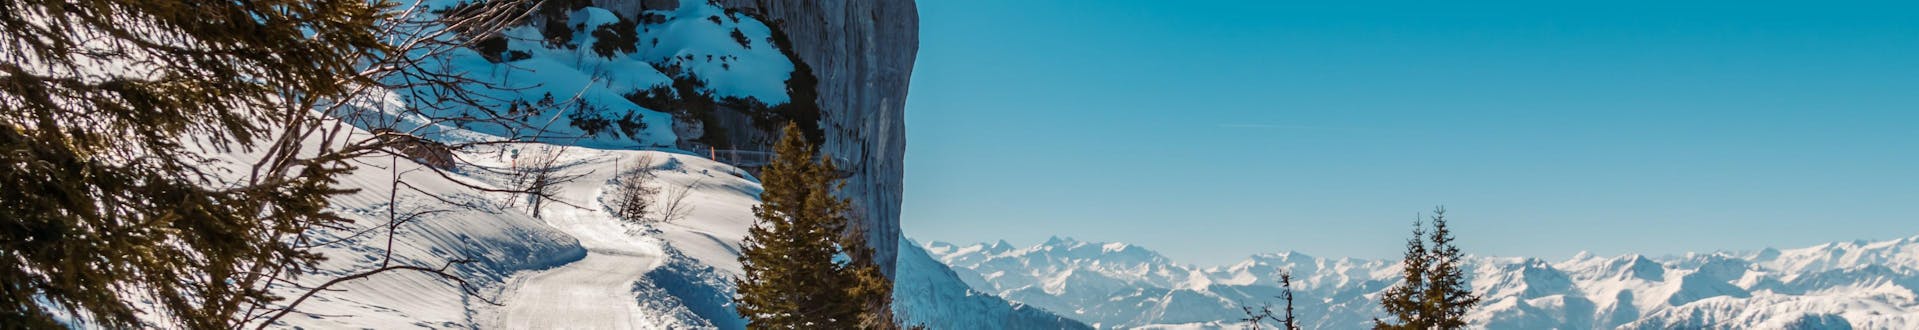 Ein Blick über das traumhafte Bergpanorama um Waidring-Steinplatte, einem beliebten österreichischen Skigebiet in dem man bei einer der örtlichen Skischulen einen Skikurs buchen kann.